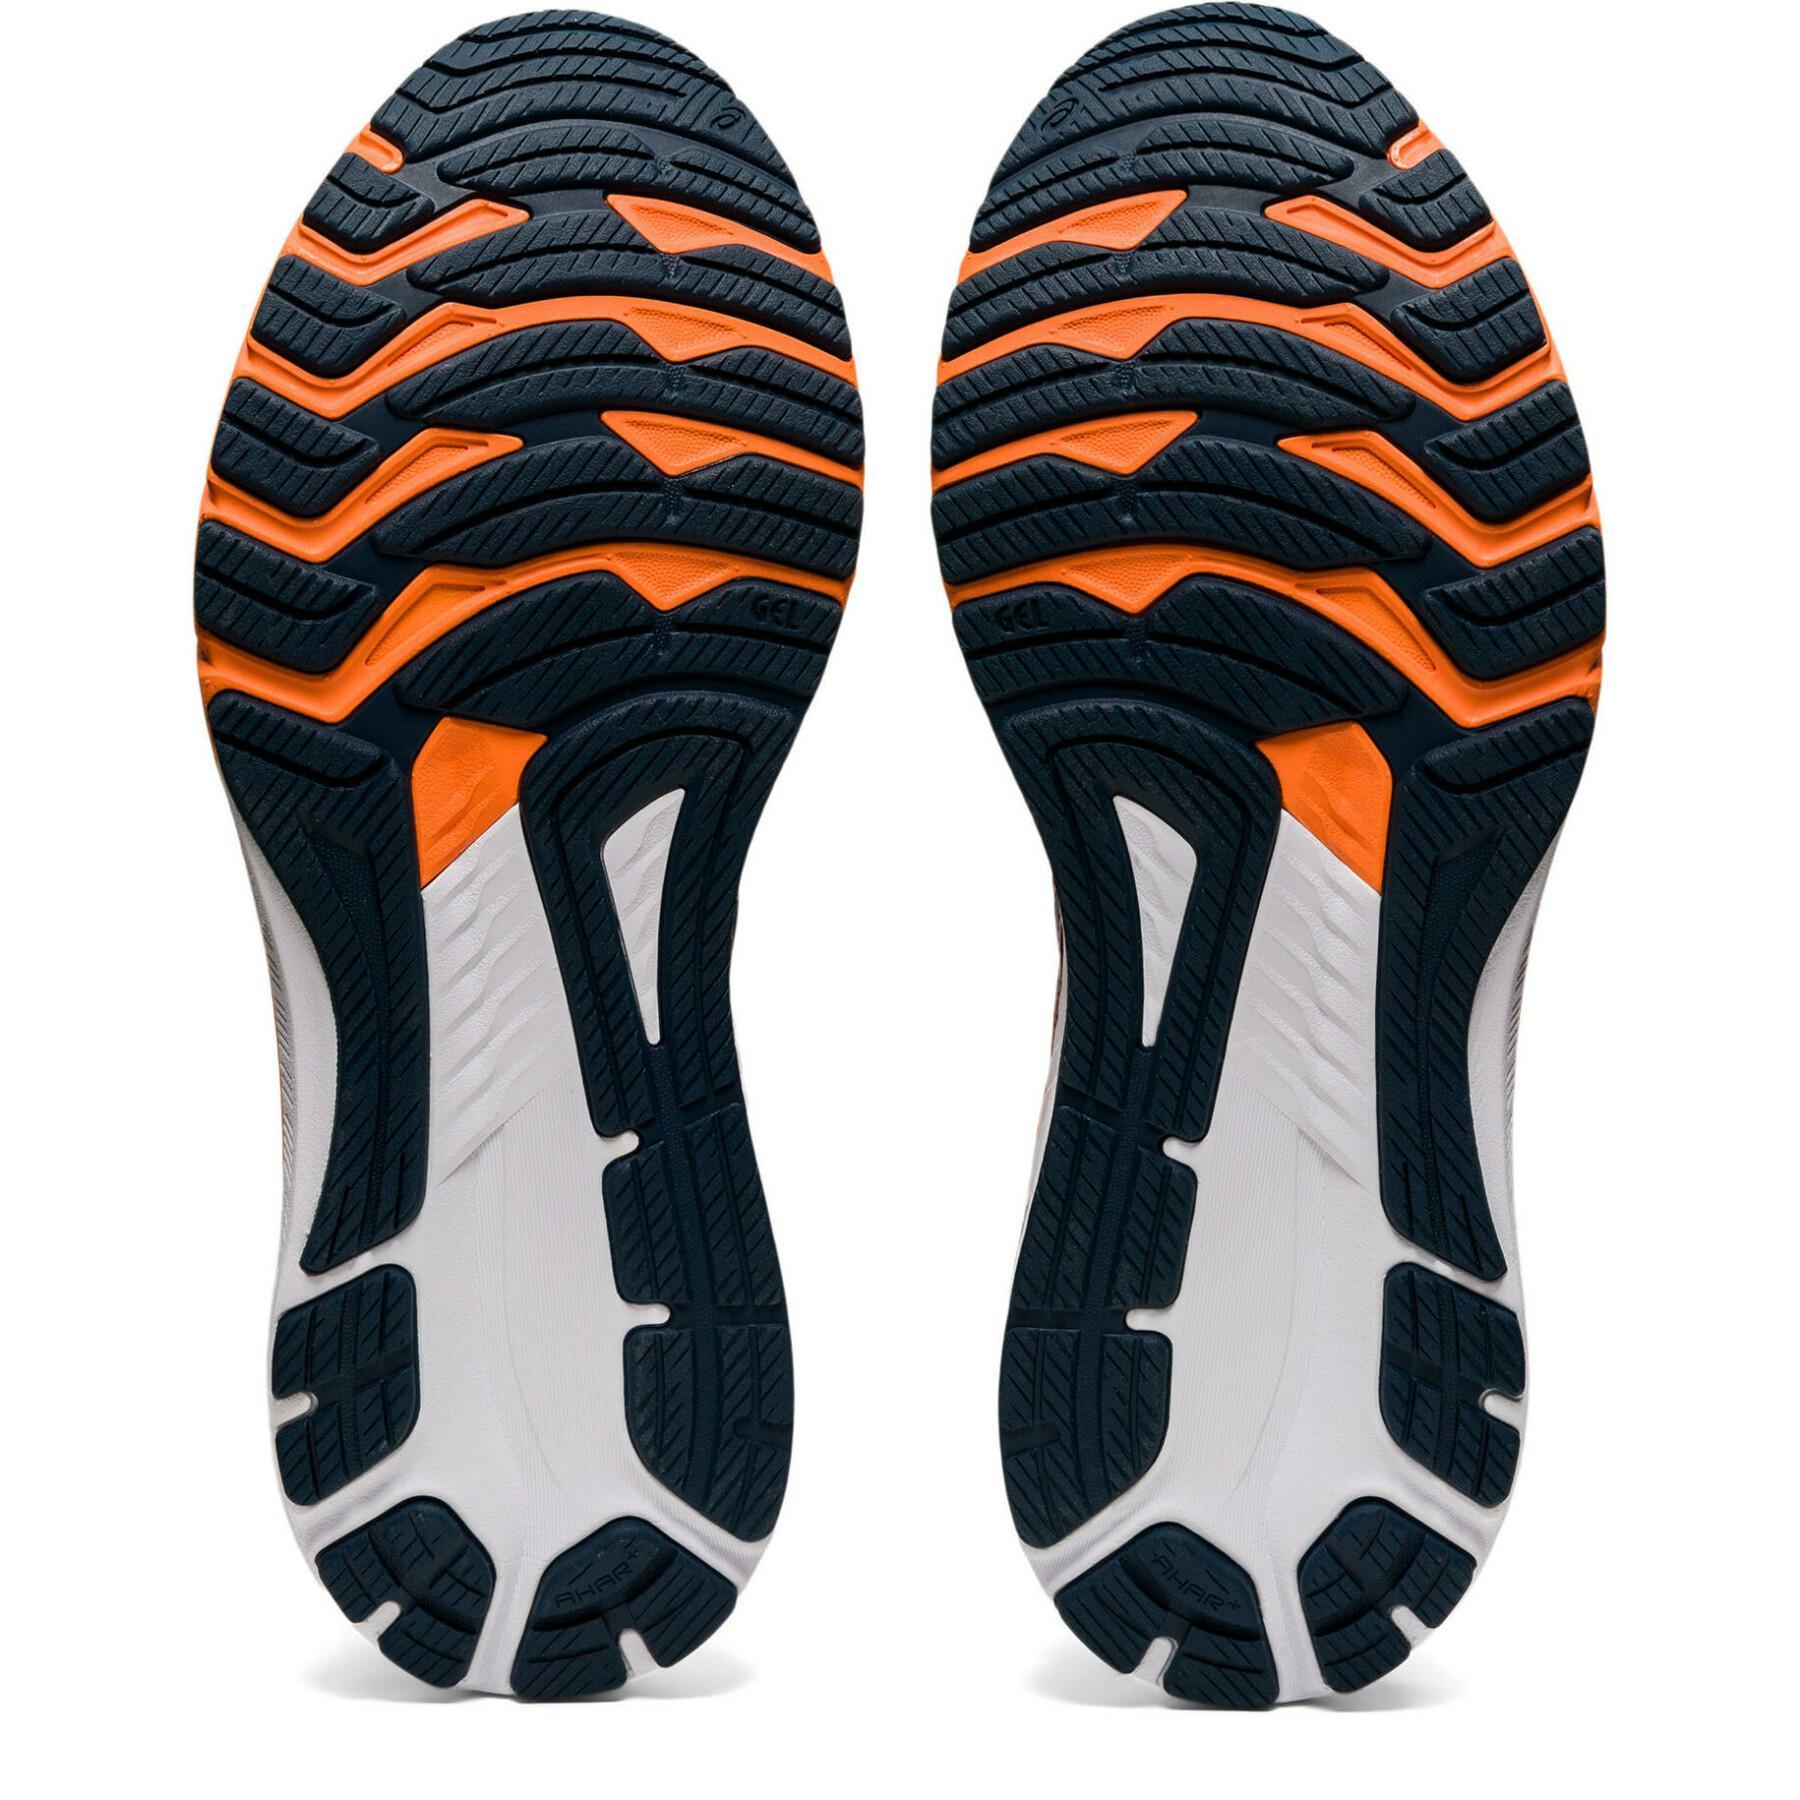 Schuhe Asics Gt-2000 10